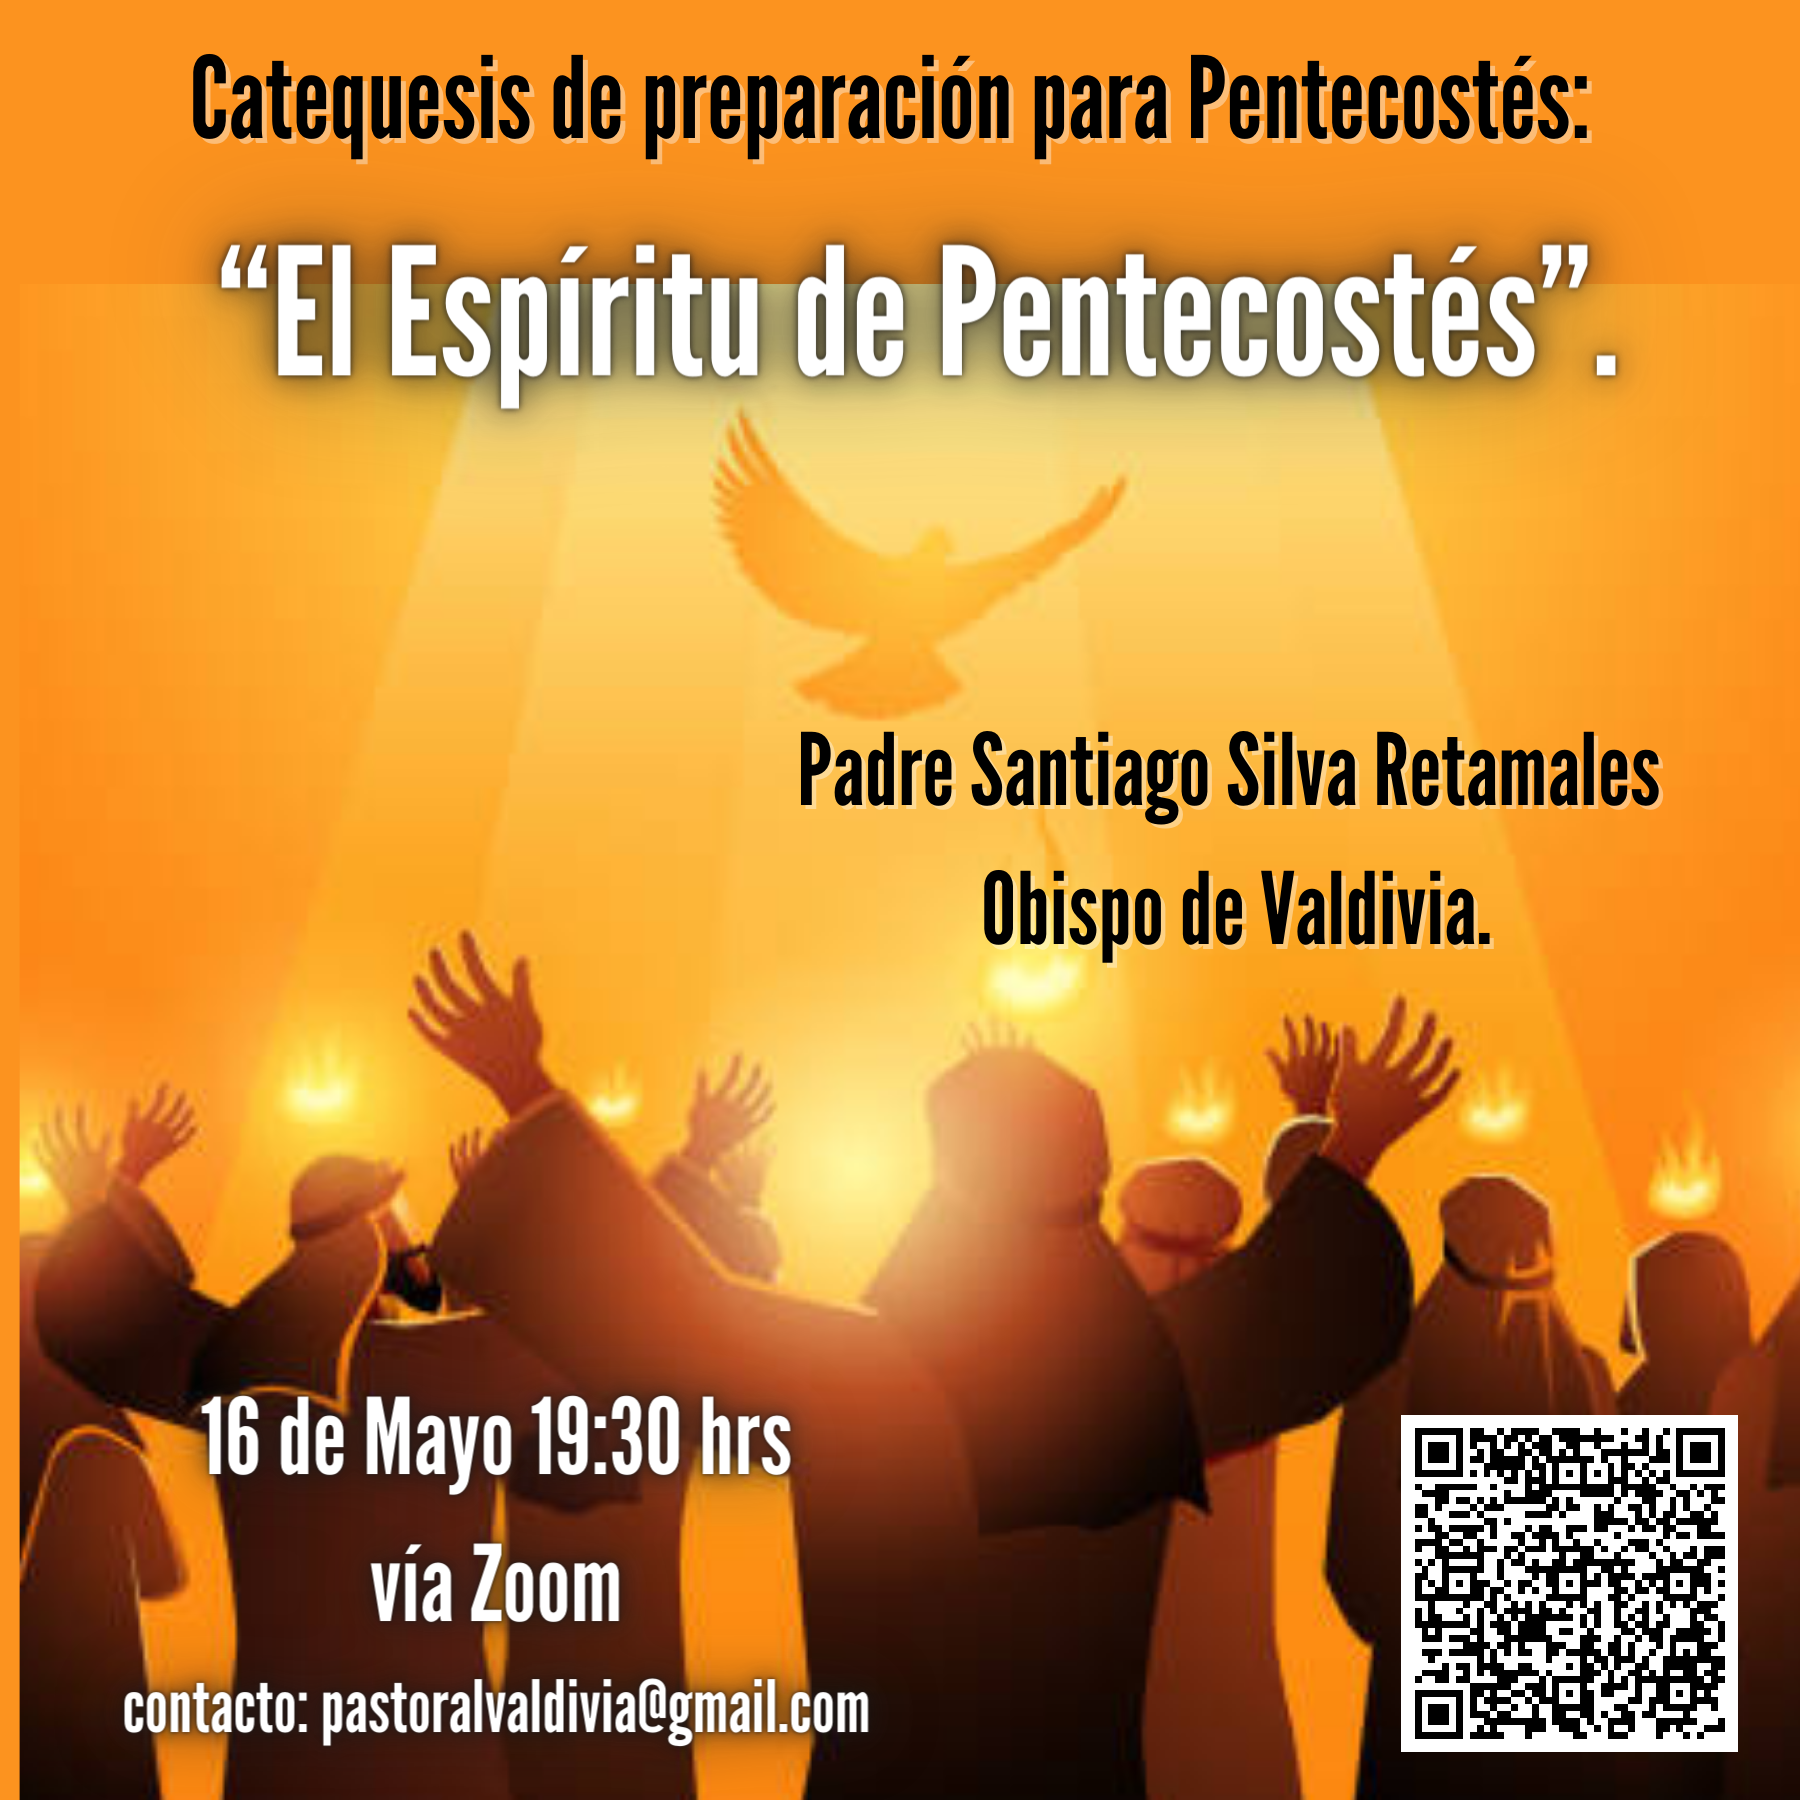 16 de Mayo 19,30 hrs por zoom. SSR. Catequesis de preparación a fiesta de Pentecostés EL Espíritu derramado en Pentecostés.